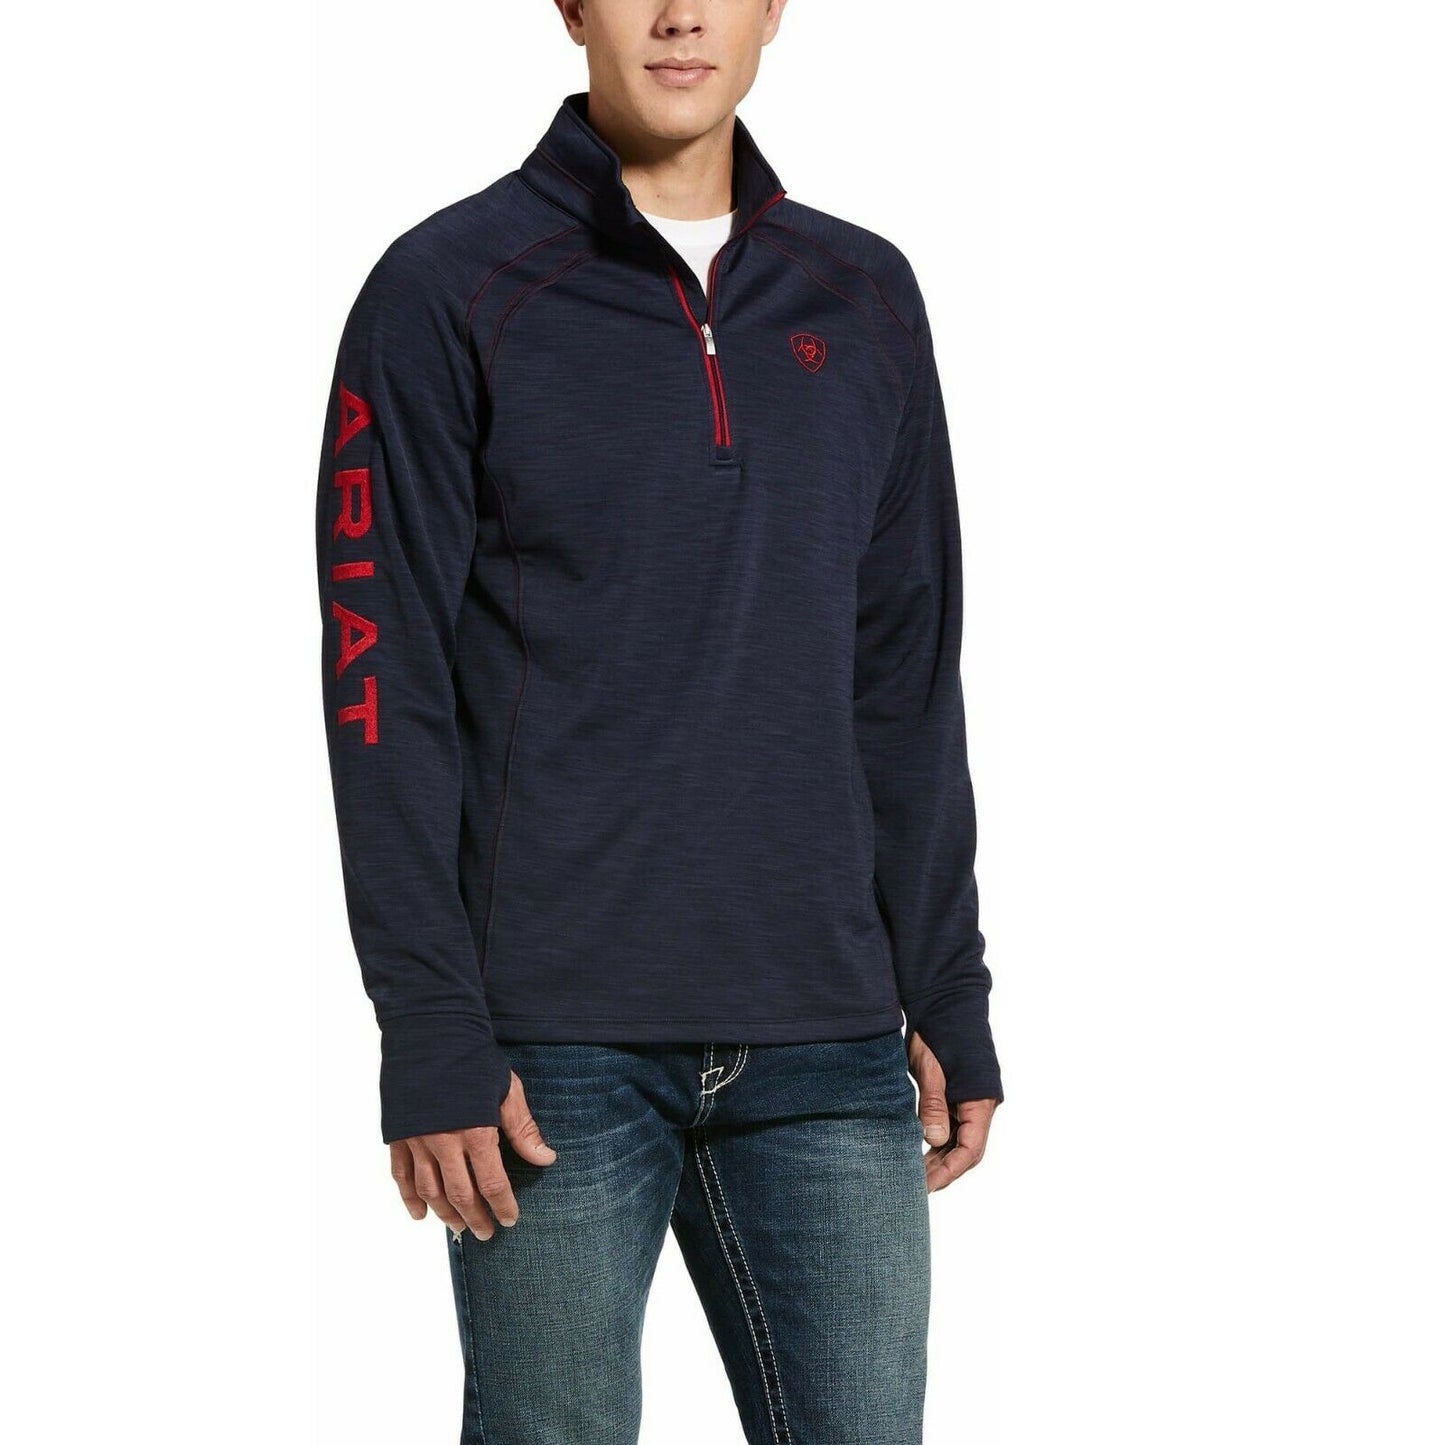 Ariat® Men's Navy Heather Team Logo 1/2 Zip Sweatshirt 10032804